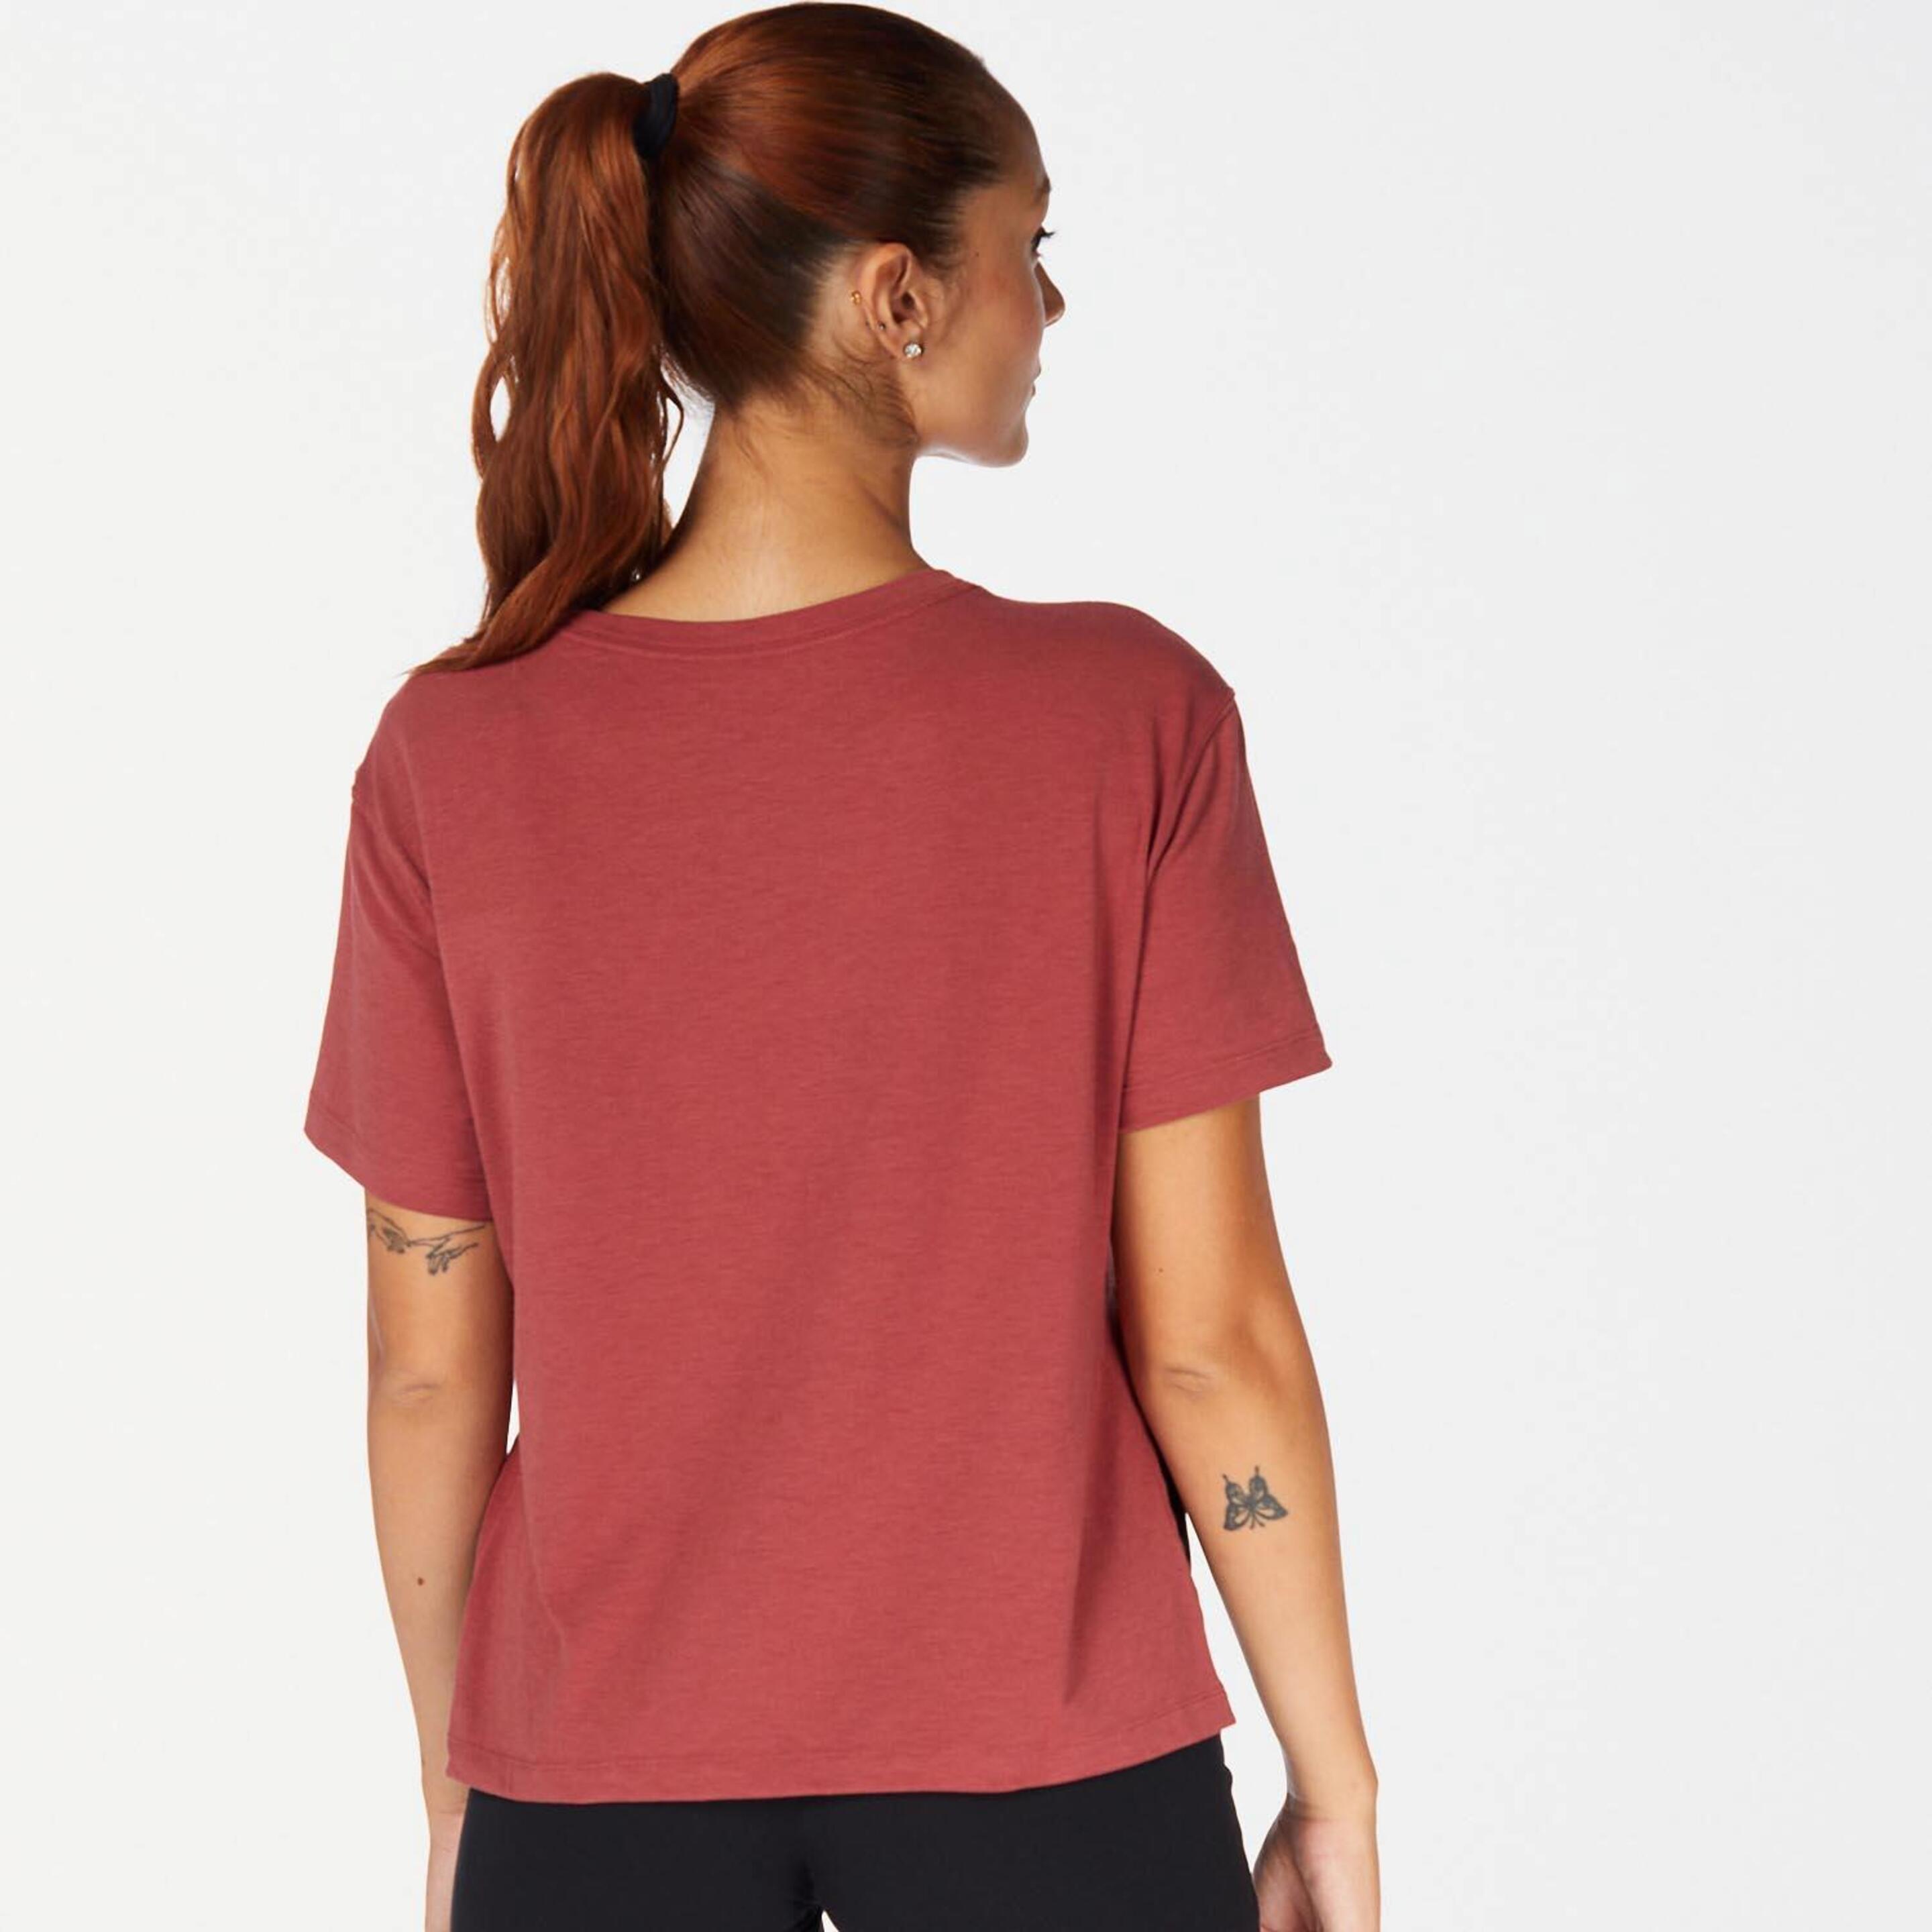 Camiseta Nike - Rosa - Camiseta Fitness Mujer